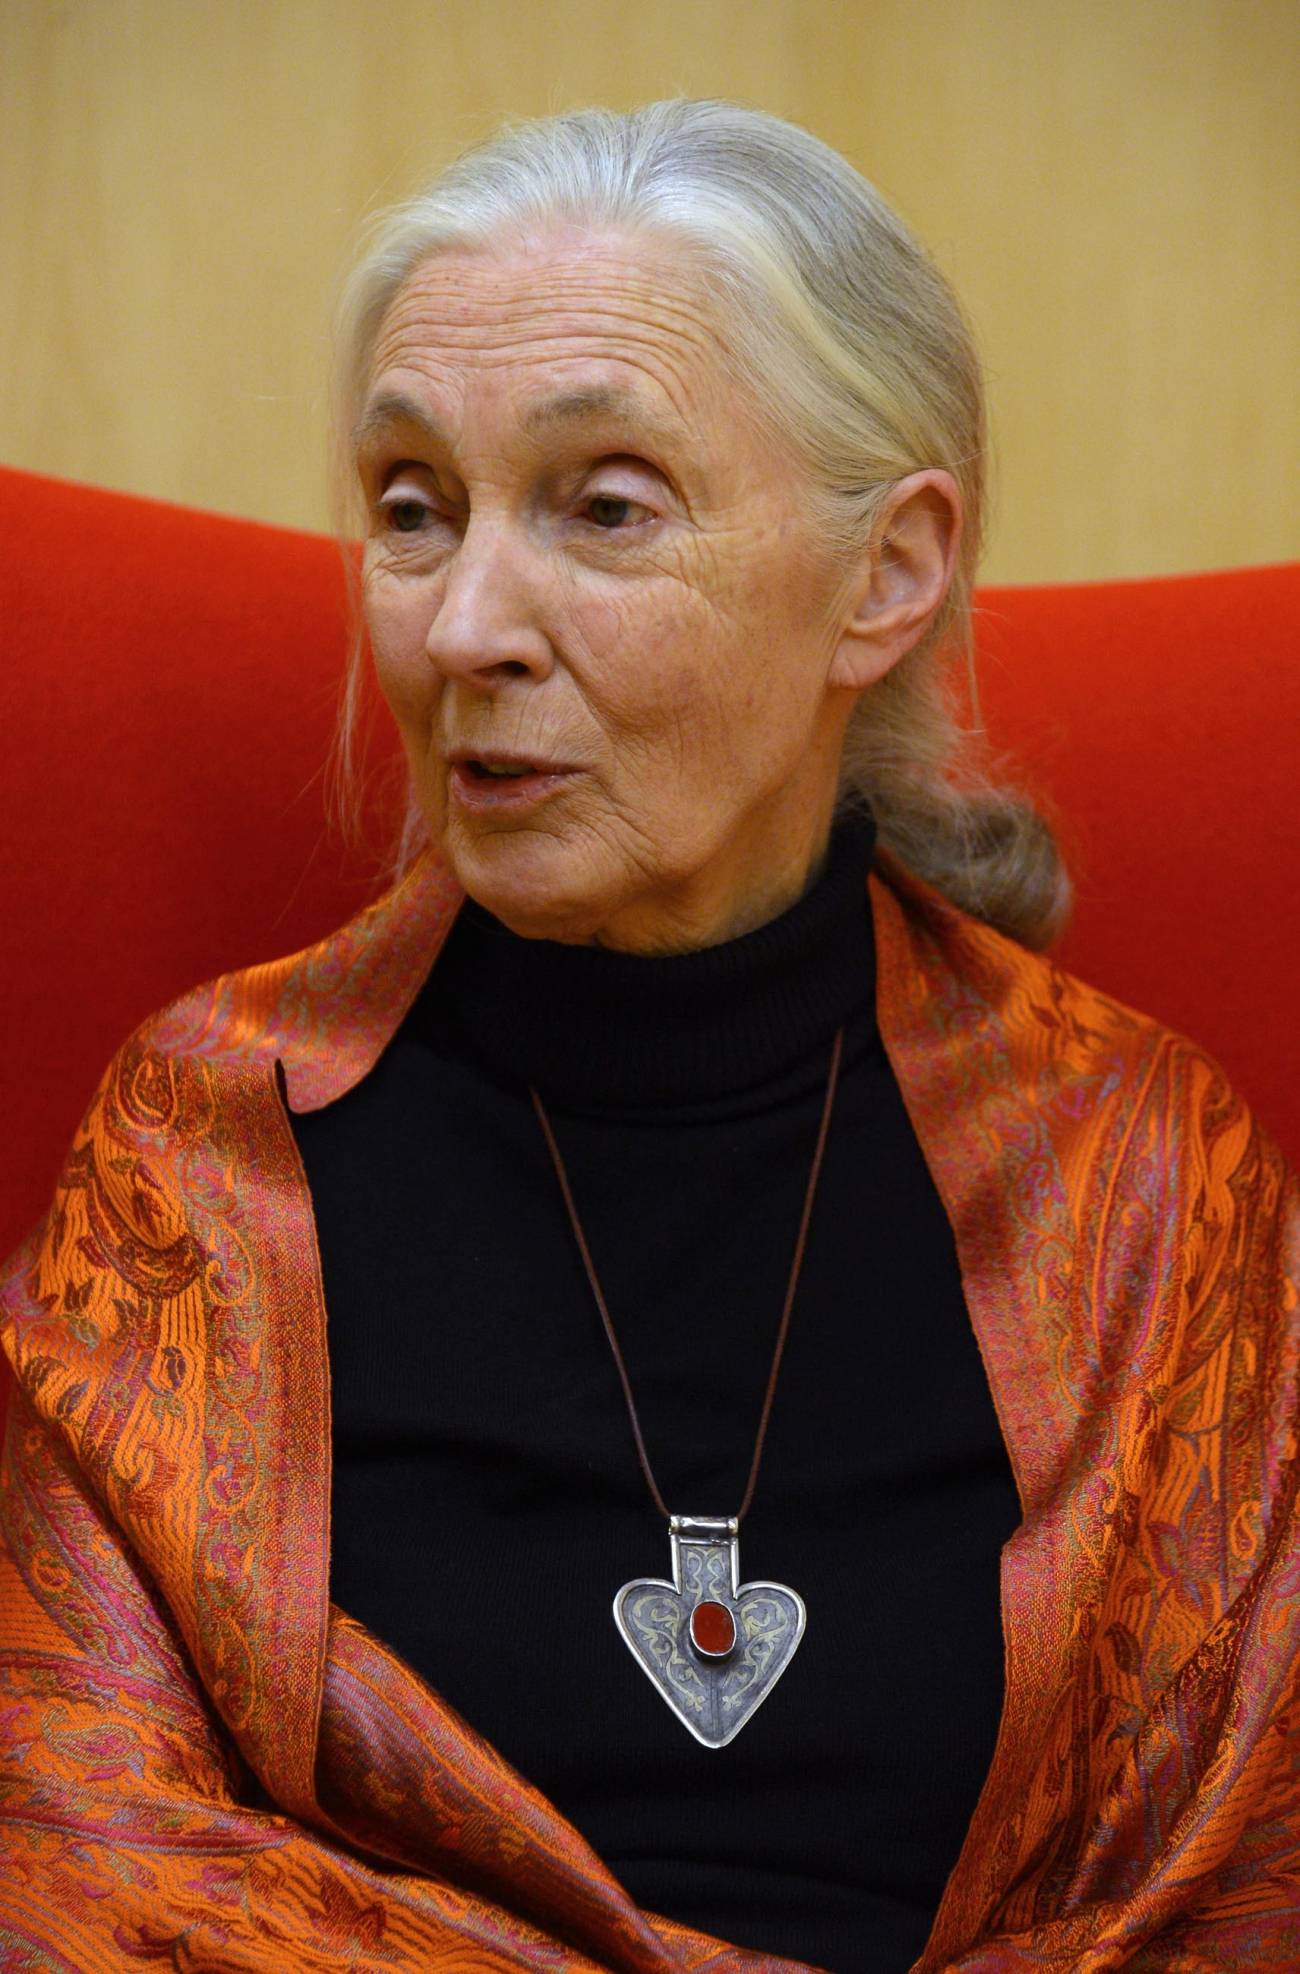 Jane Goodall en su visita al Museo de la Evolución. / MEH.